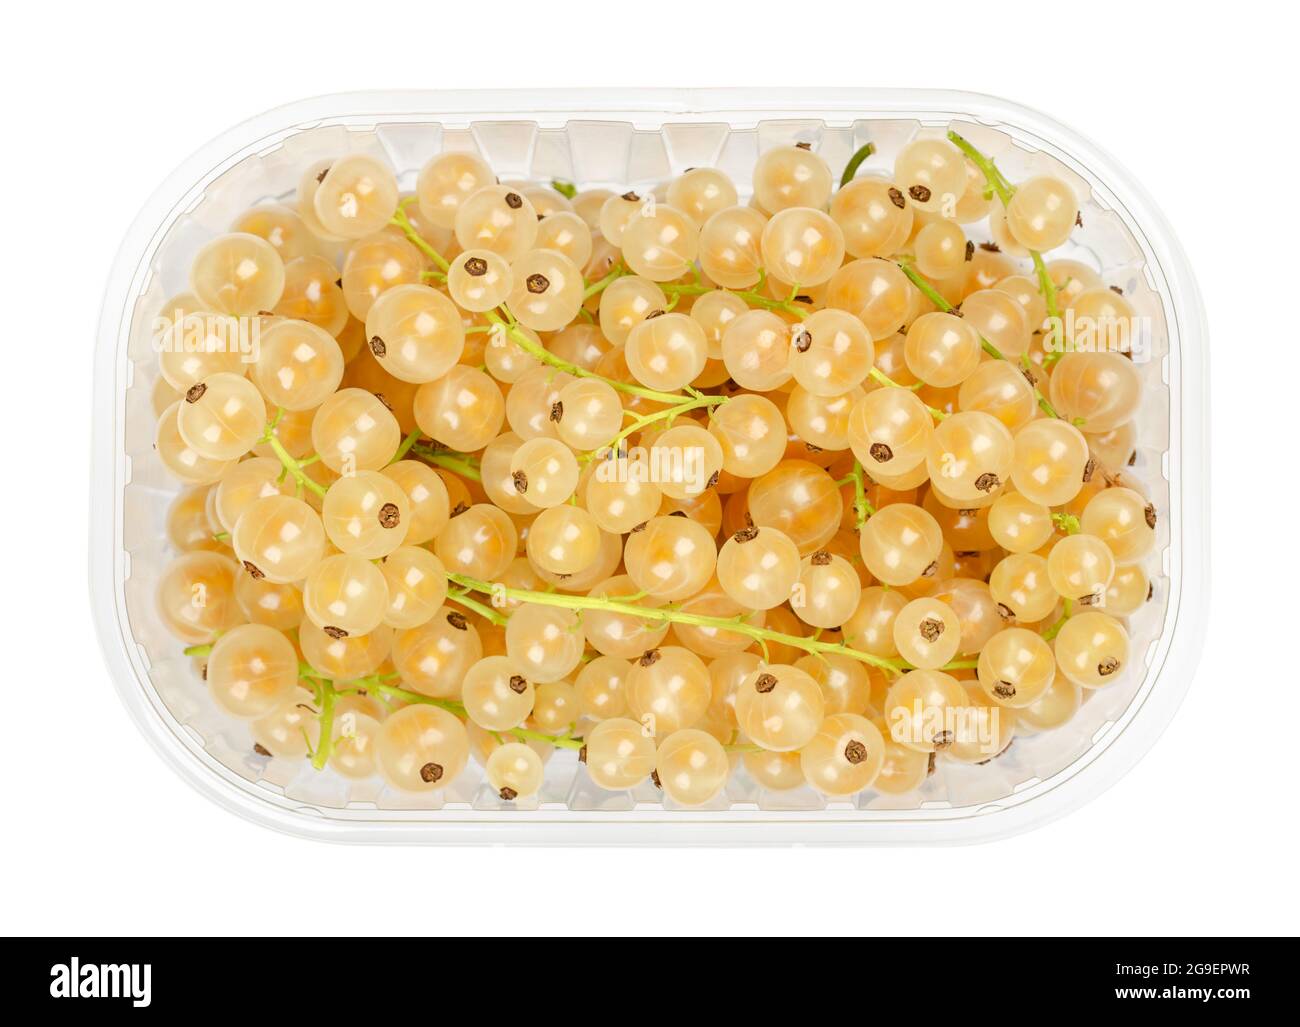 Weiße Johannisbeeren, in einem Plastikbehälter. Frische reife weißrote Beeren, kugelförmige essbare Früchte von Ribes rubrum, einer roten Johannisbeersorte. Stockfoto